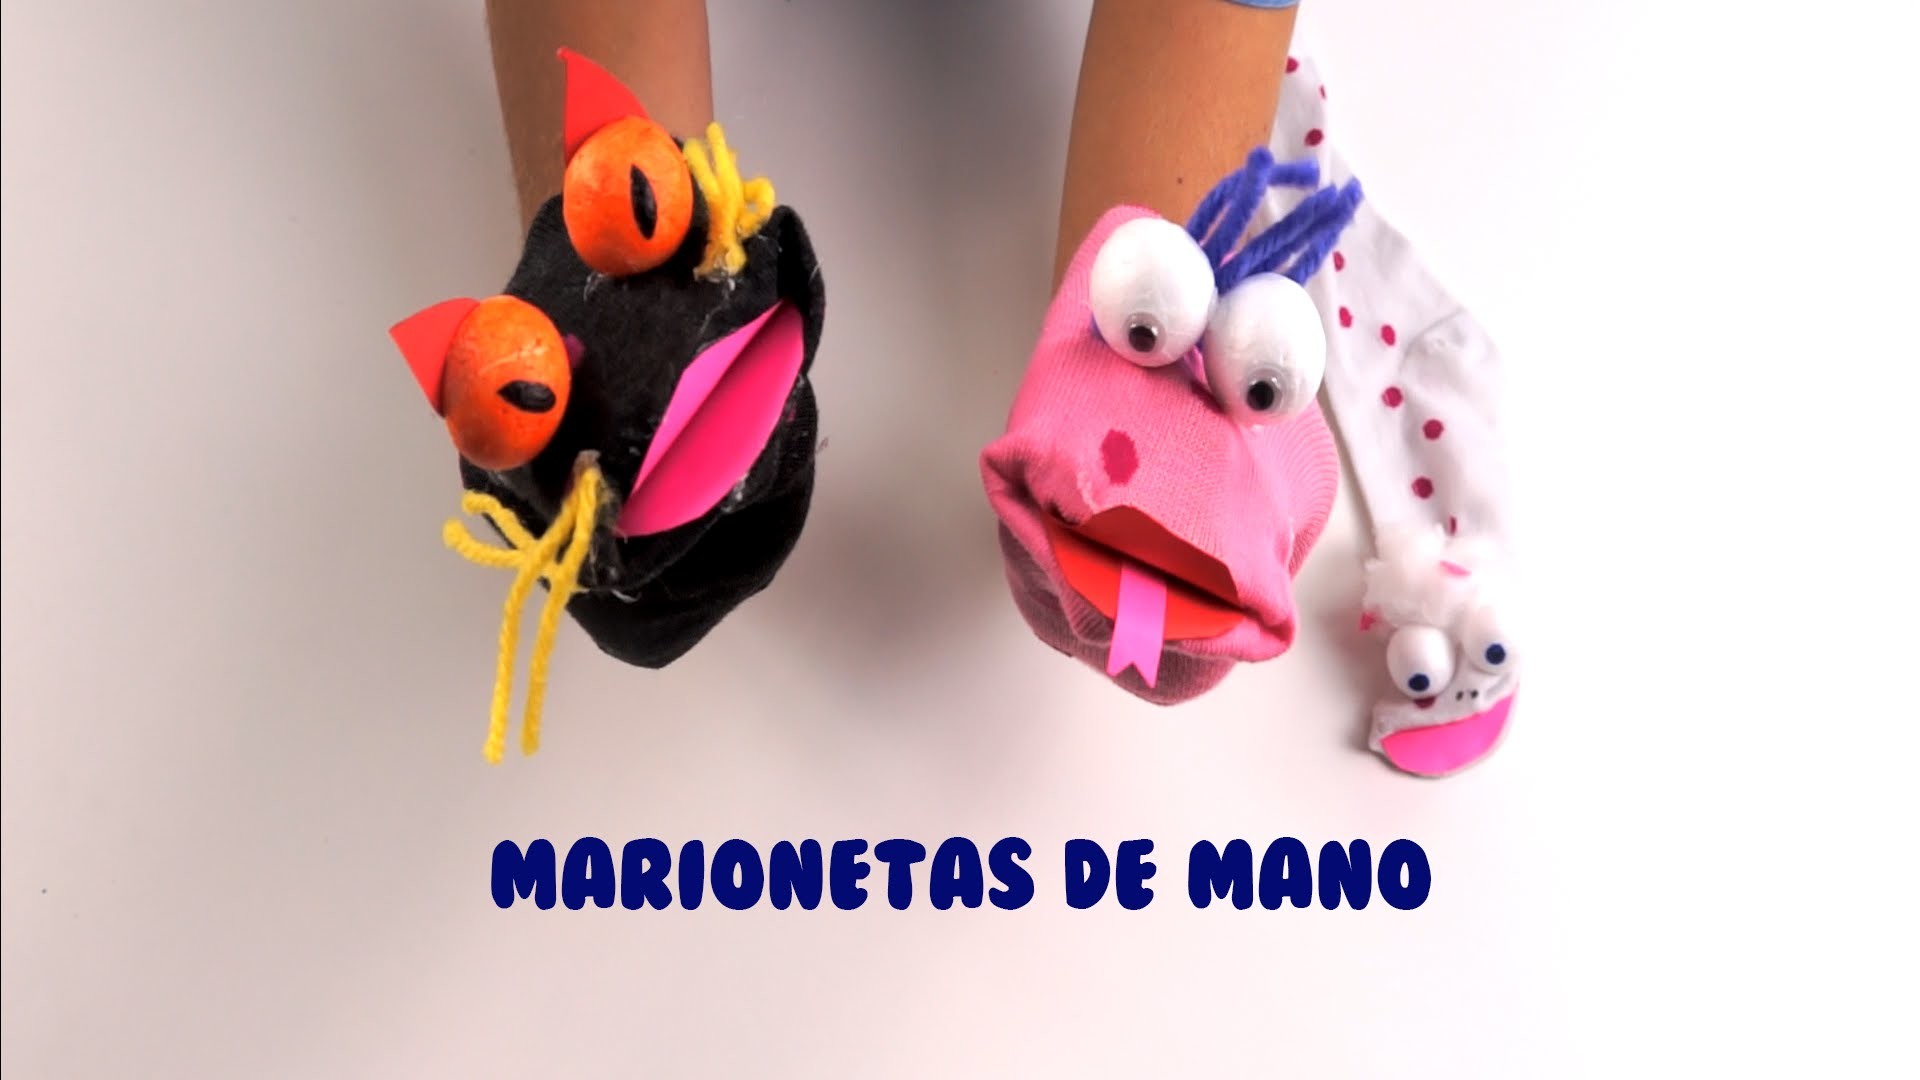 MARIONETAS DE MANO - Cómo hacer marionetas - Manualidades para niños